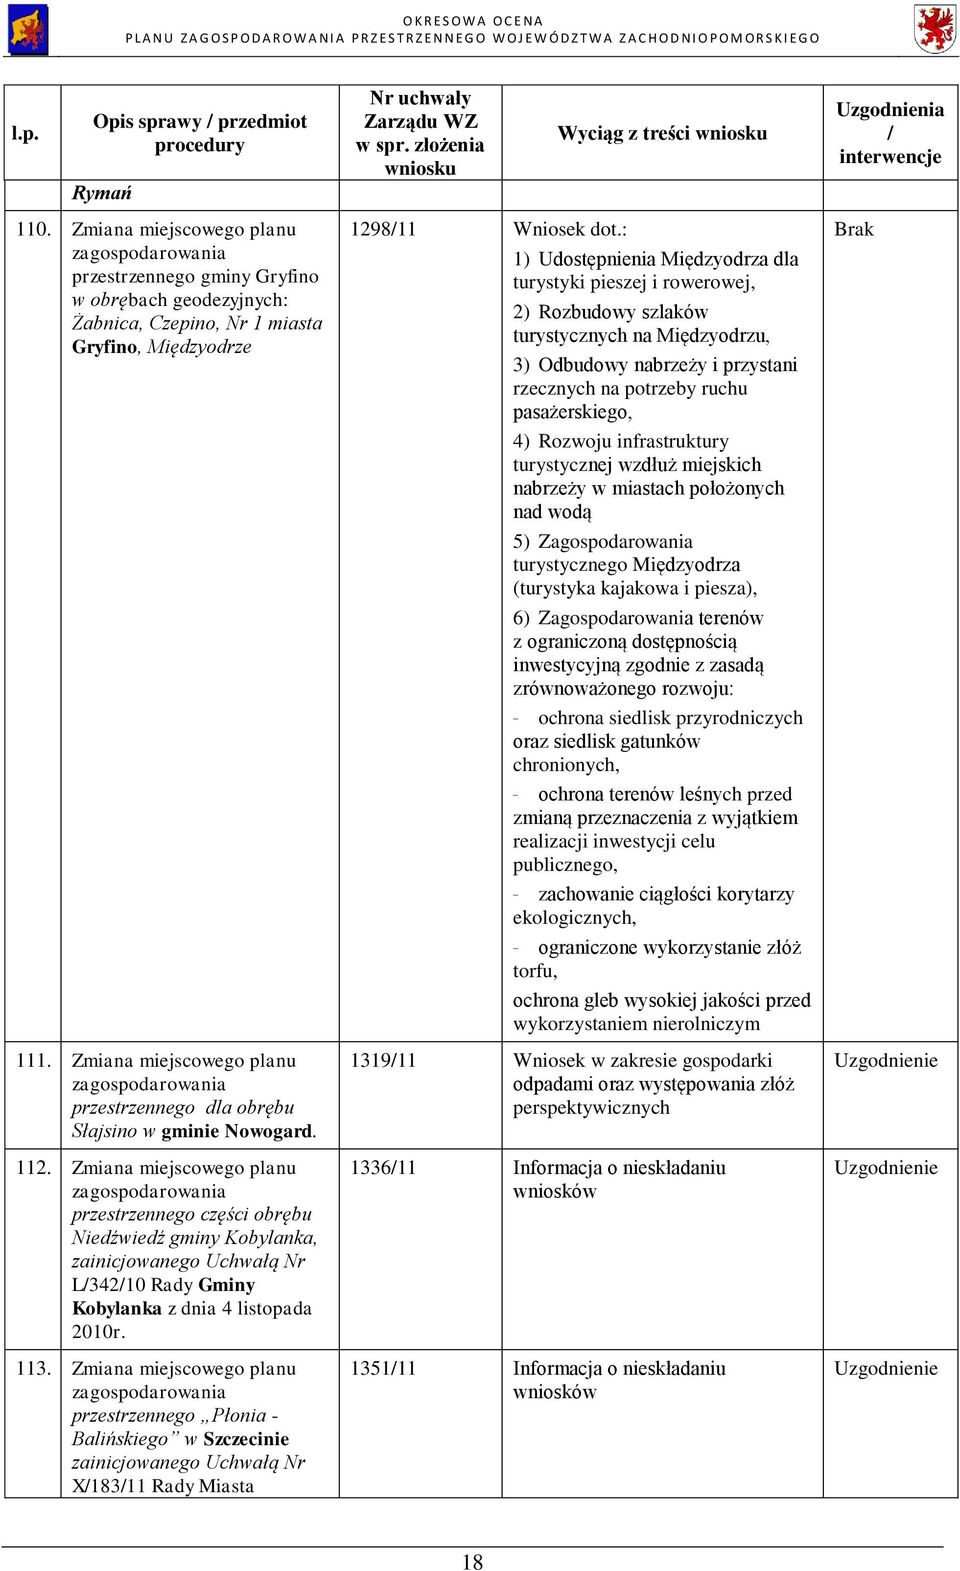 Zmiana 1 miejscowego planu przestrzennego części obrębu Niedźwiedź gminy Kobylanka, L34210 Rady Gminy Kobylanka z dnia 4 listopada 2010r. 113.